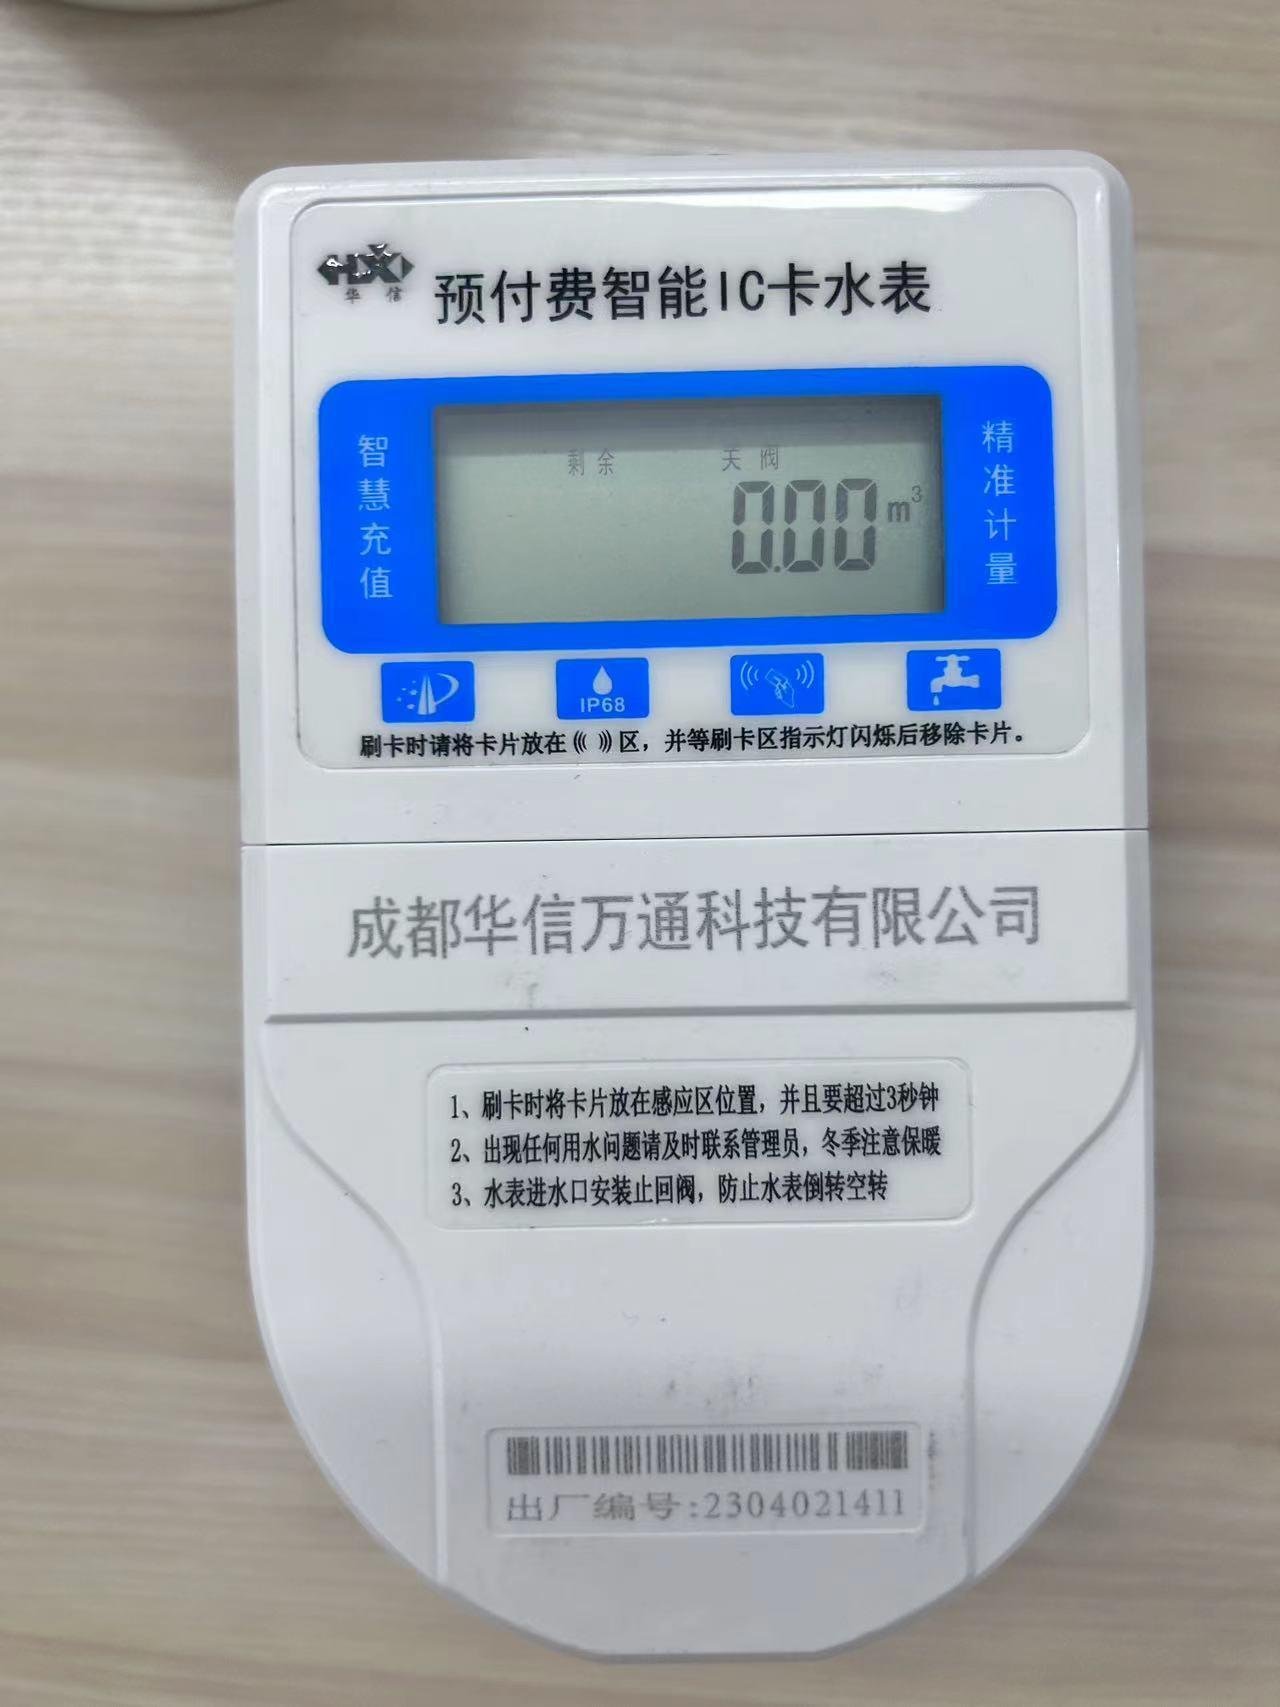 四川成都IC卡充值水表IP68級防水 3